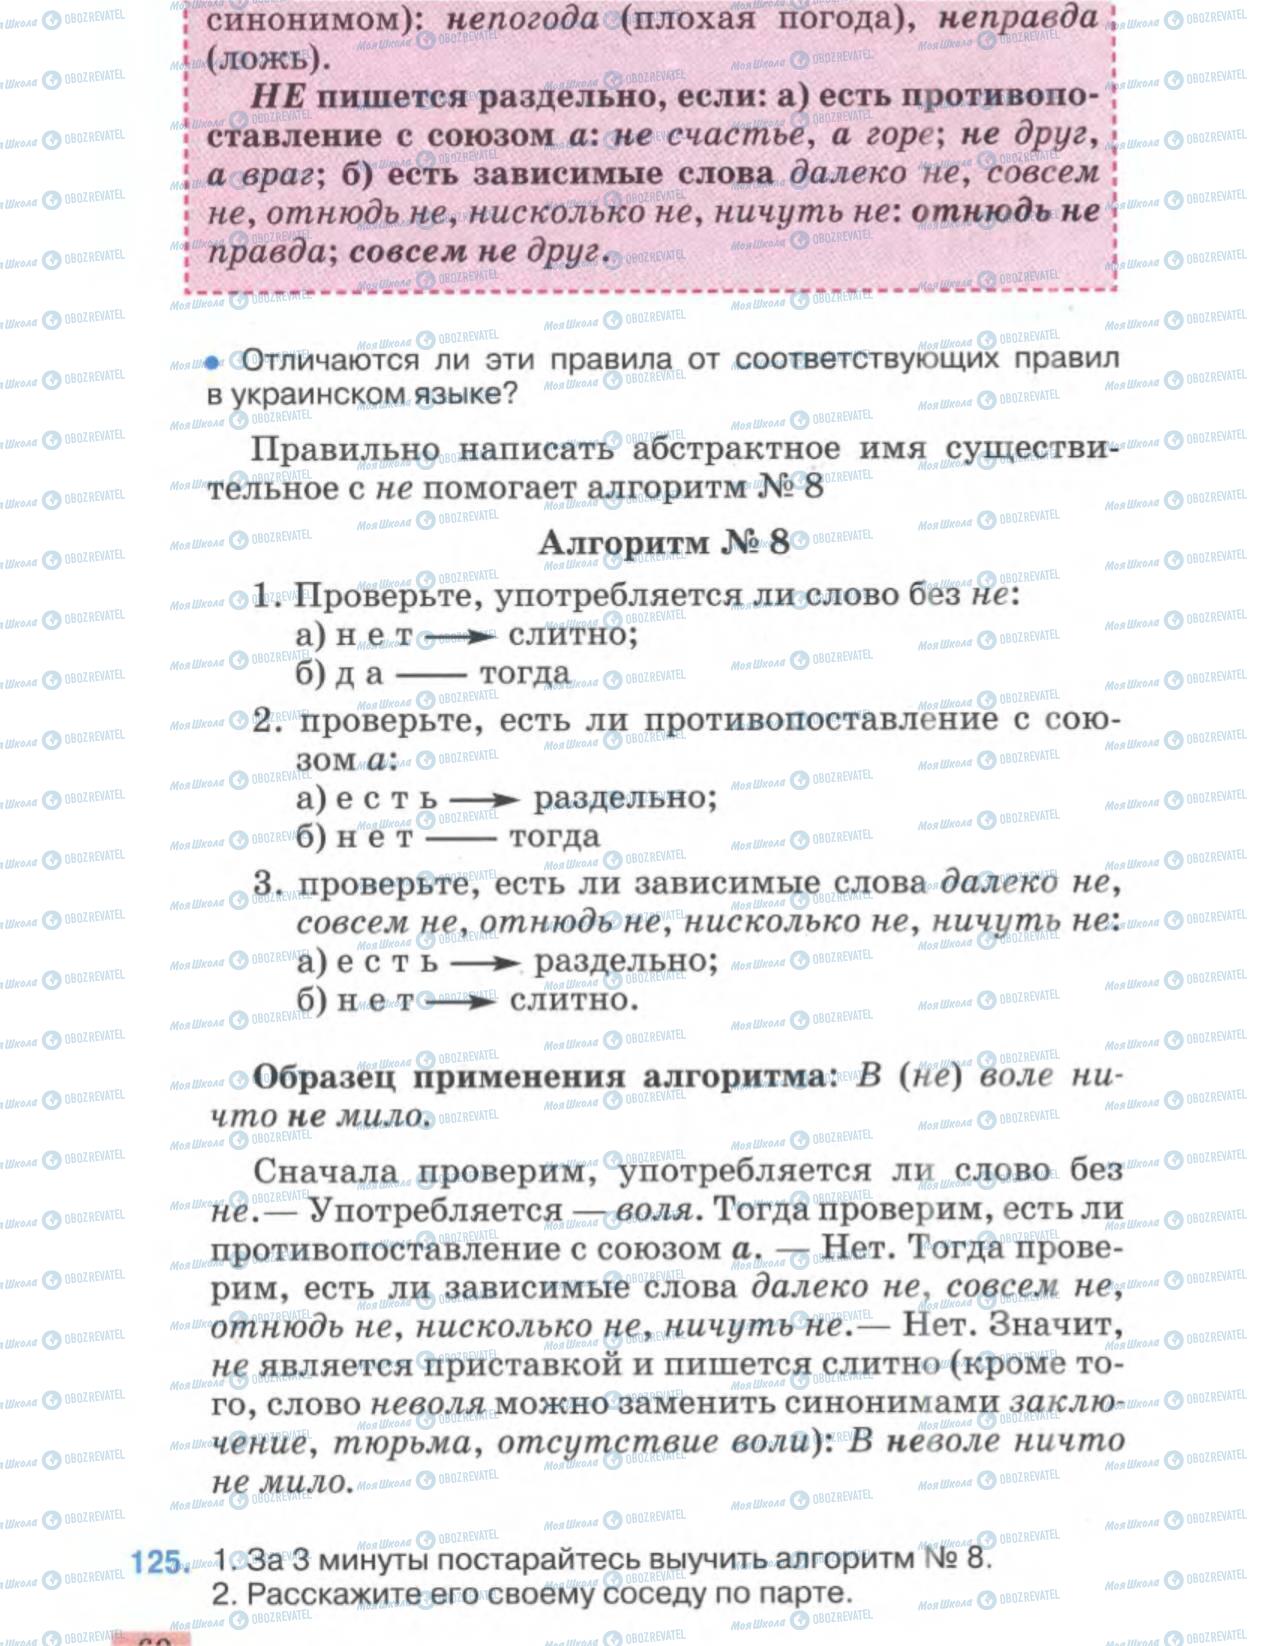 Підручники Російська мова 6 клас сторінка 60